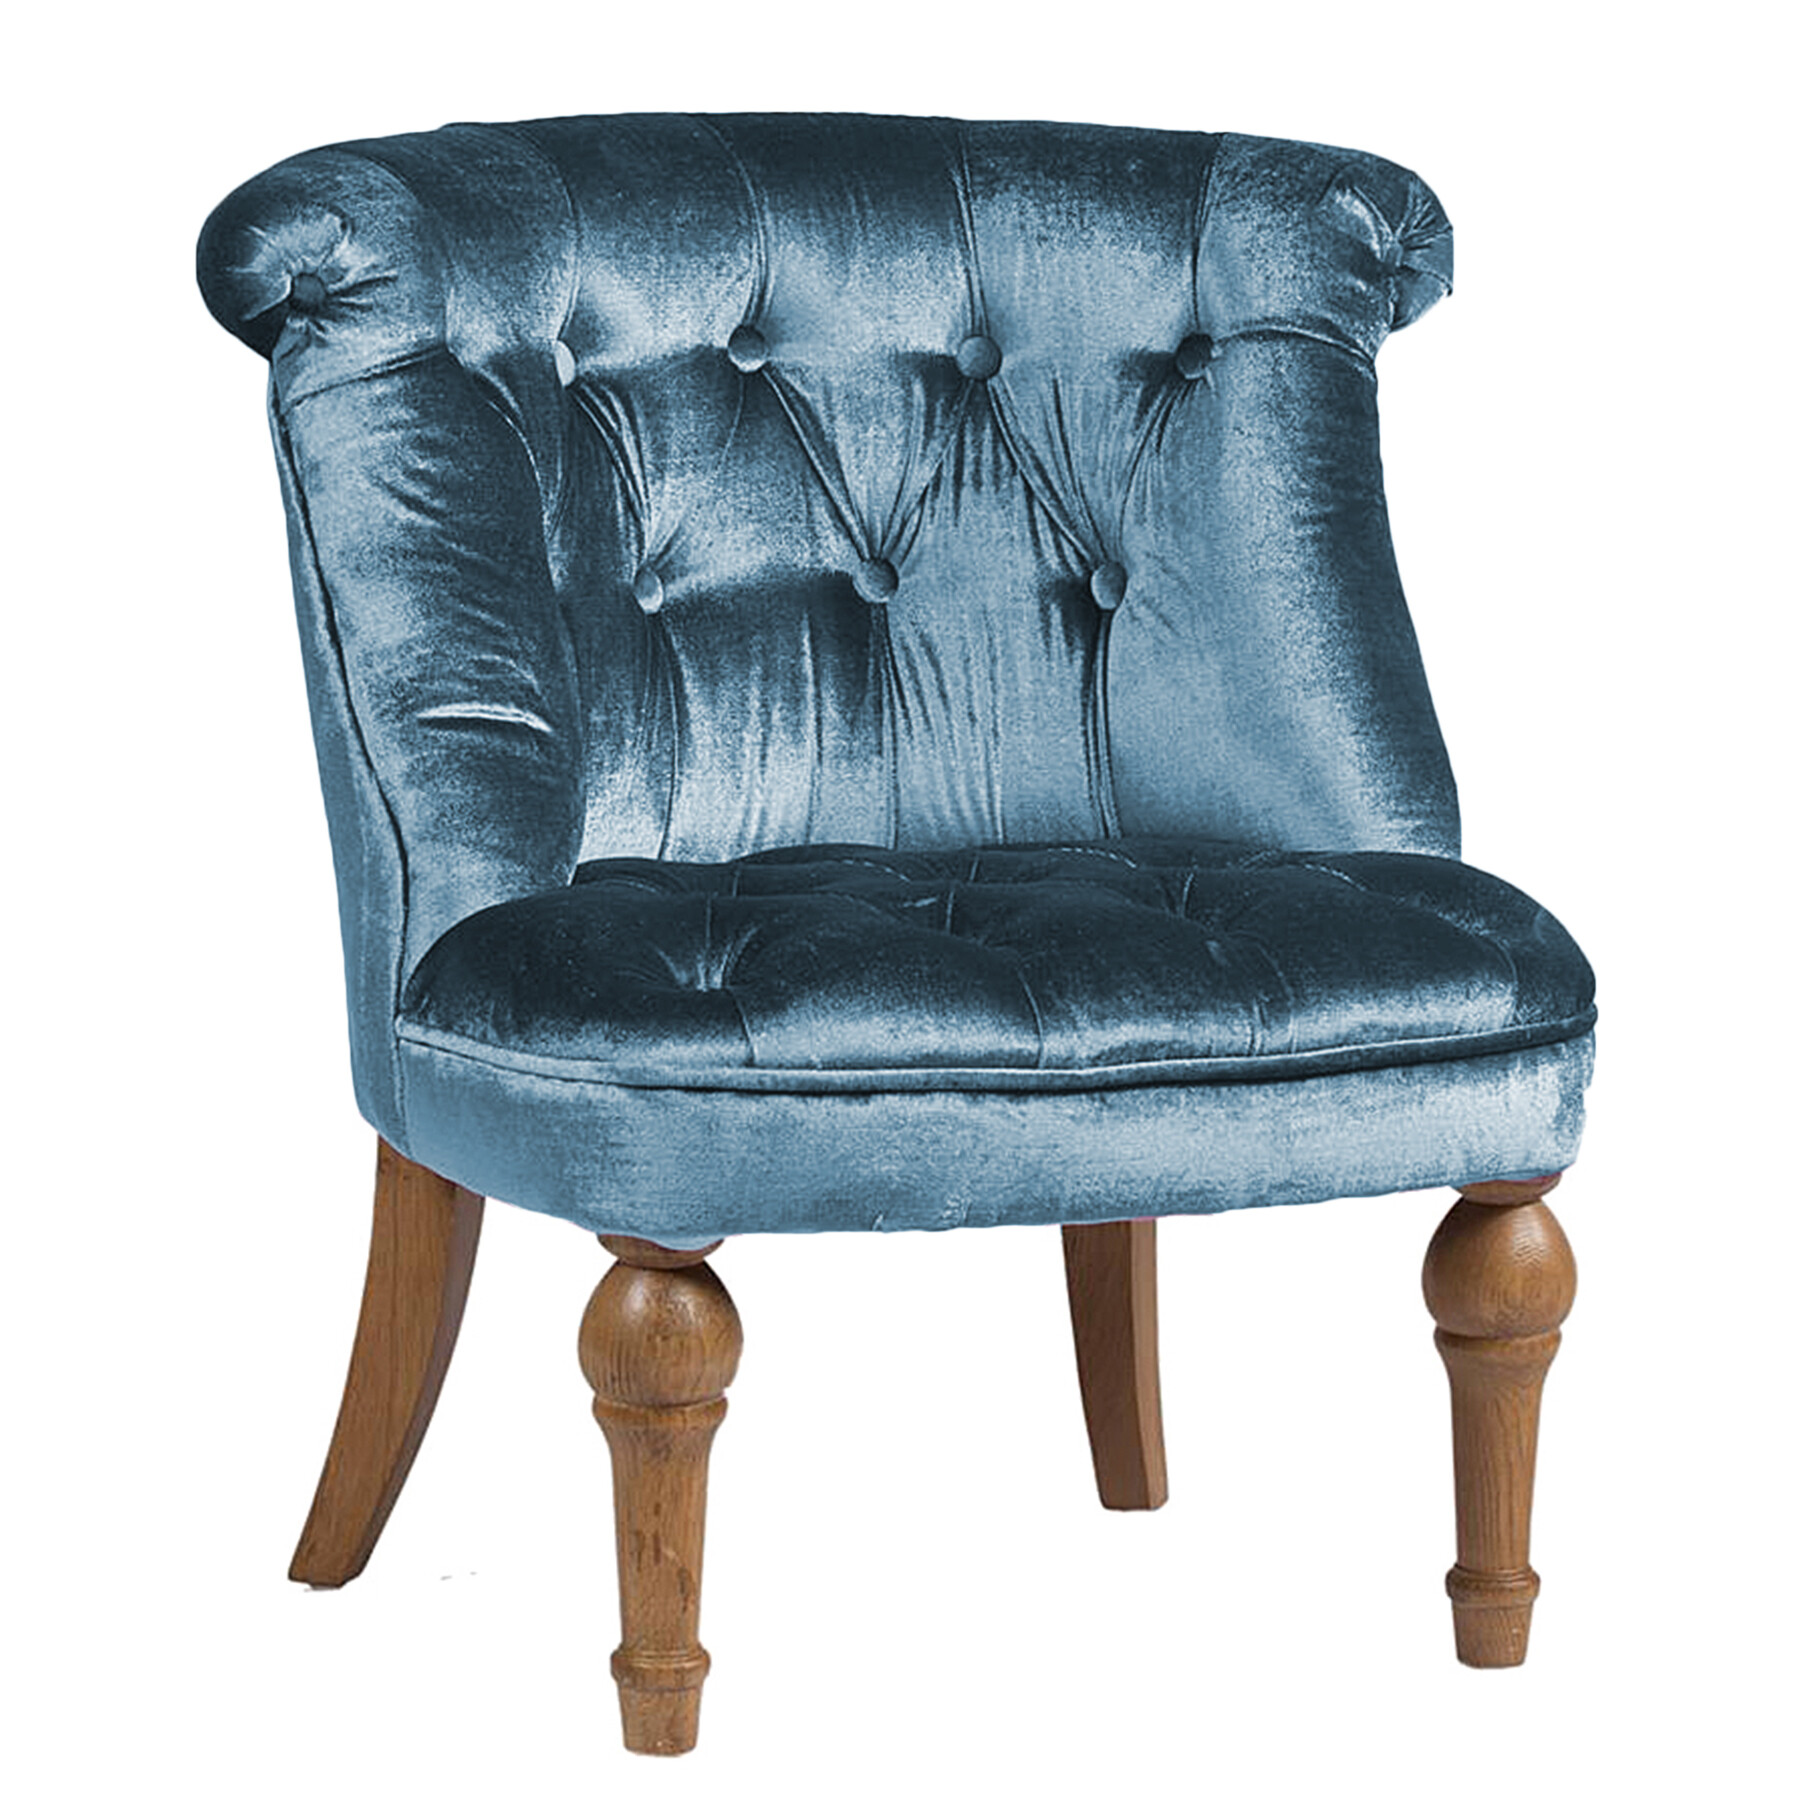 Кресло мягкое с фигурными ножками морская волна Sophie Tufted